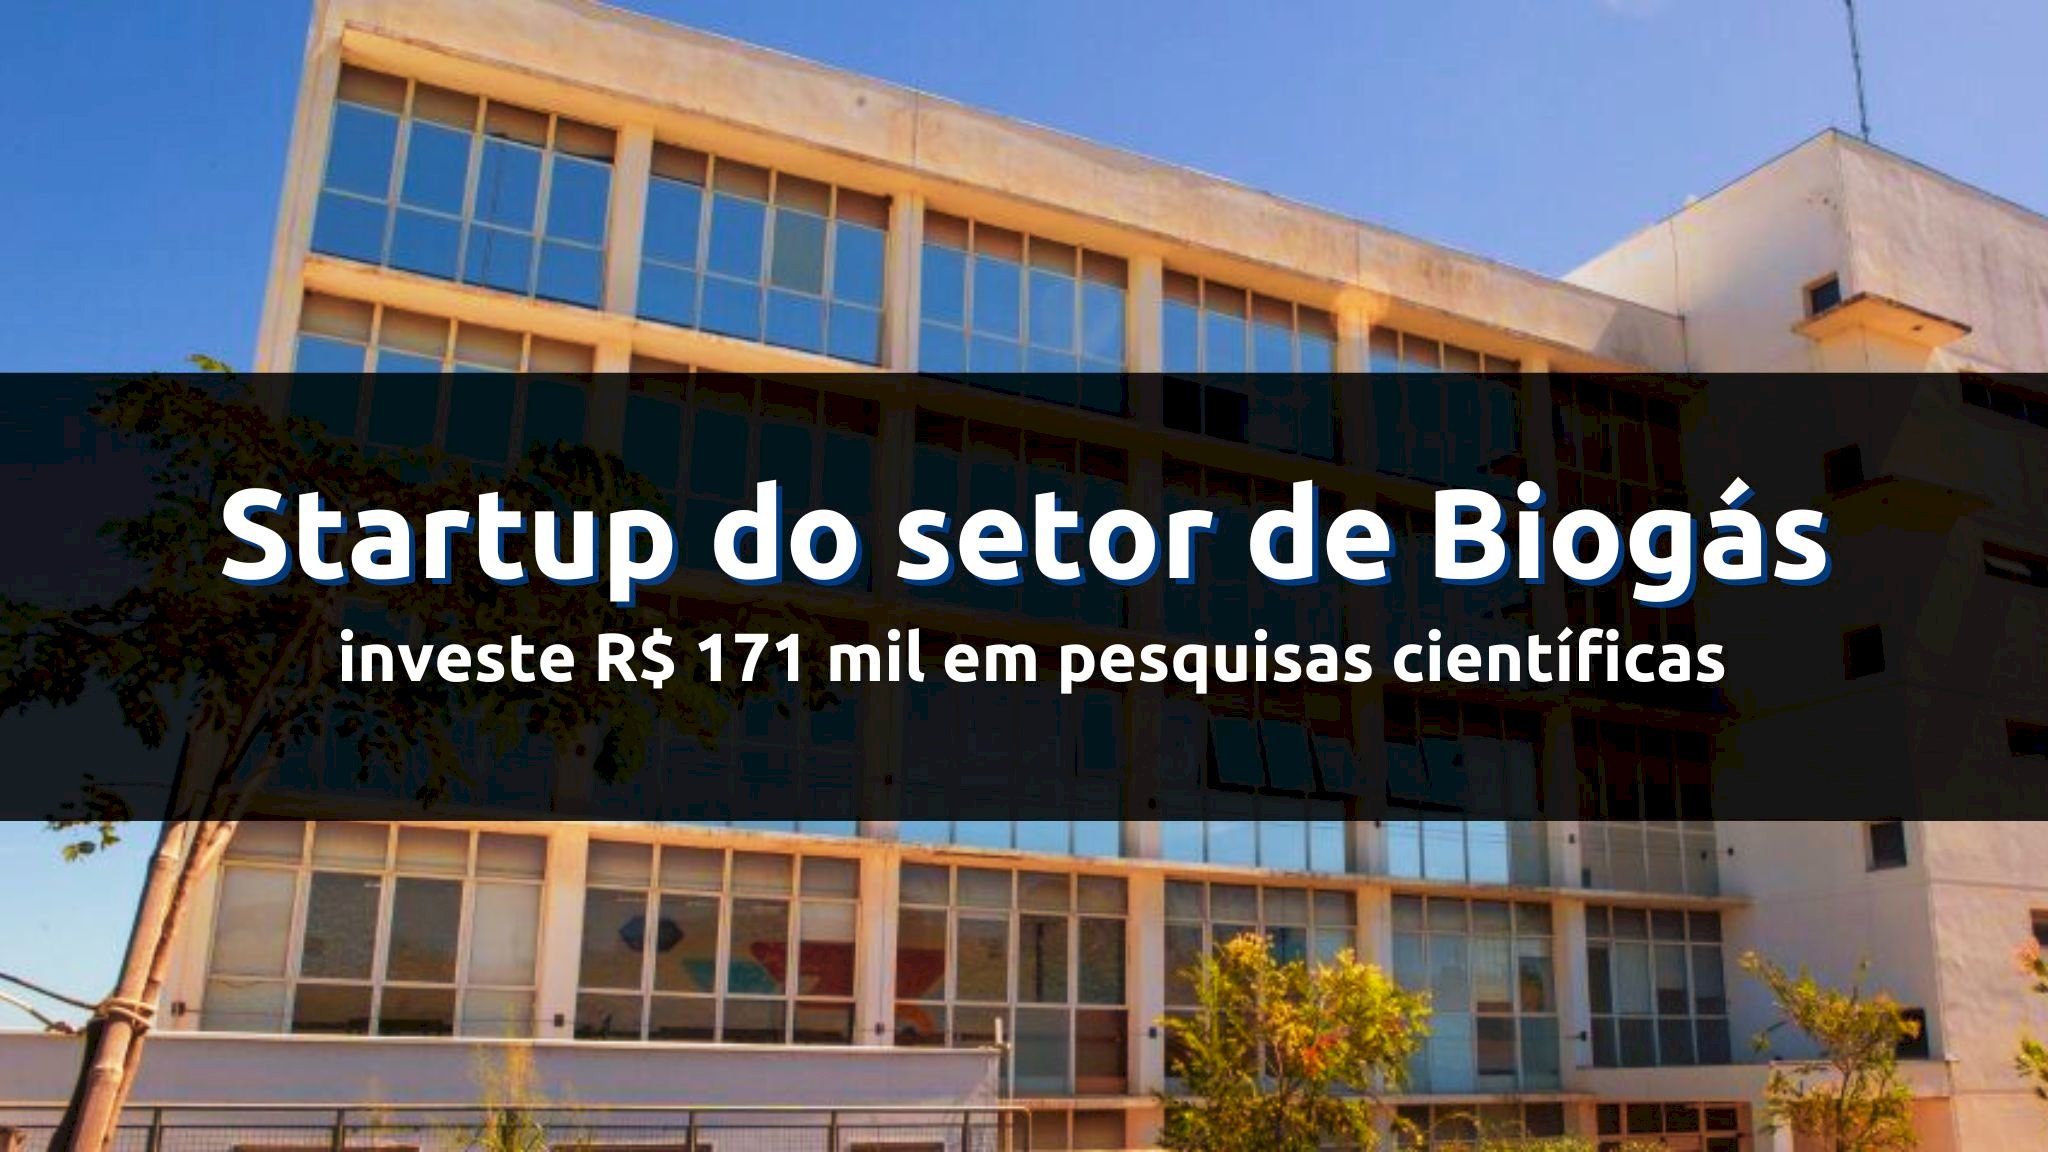 Startup inovadora da Unicamp investe R$ 171 mil em pesquisas científicas